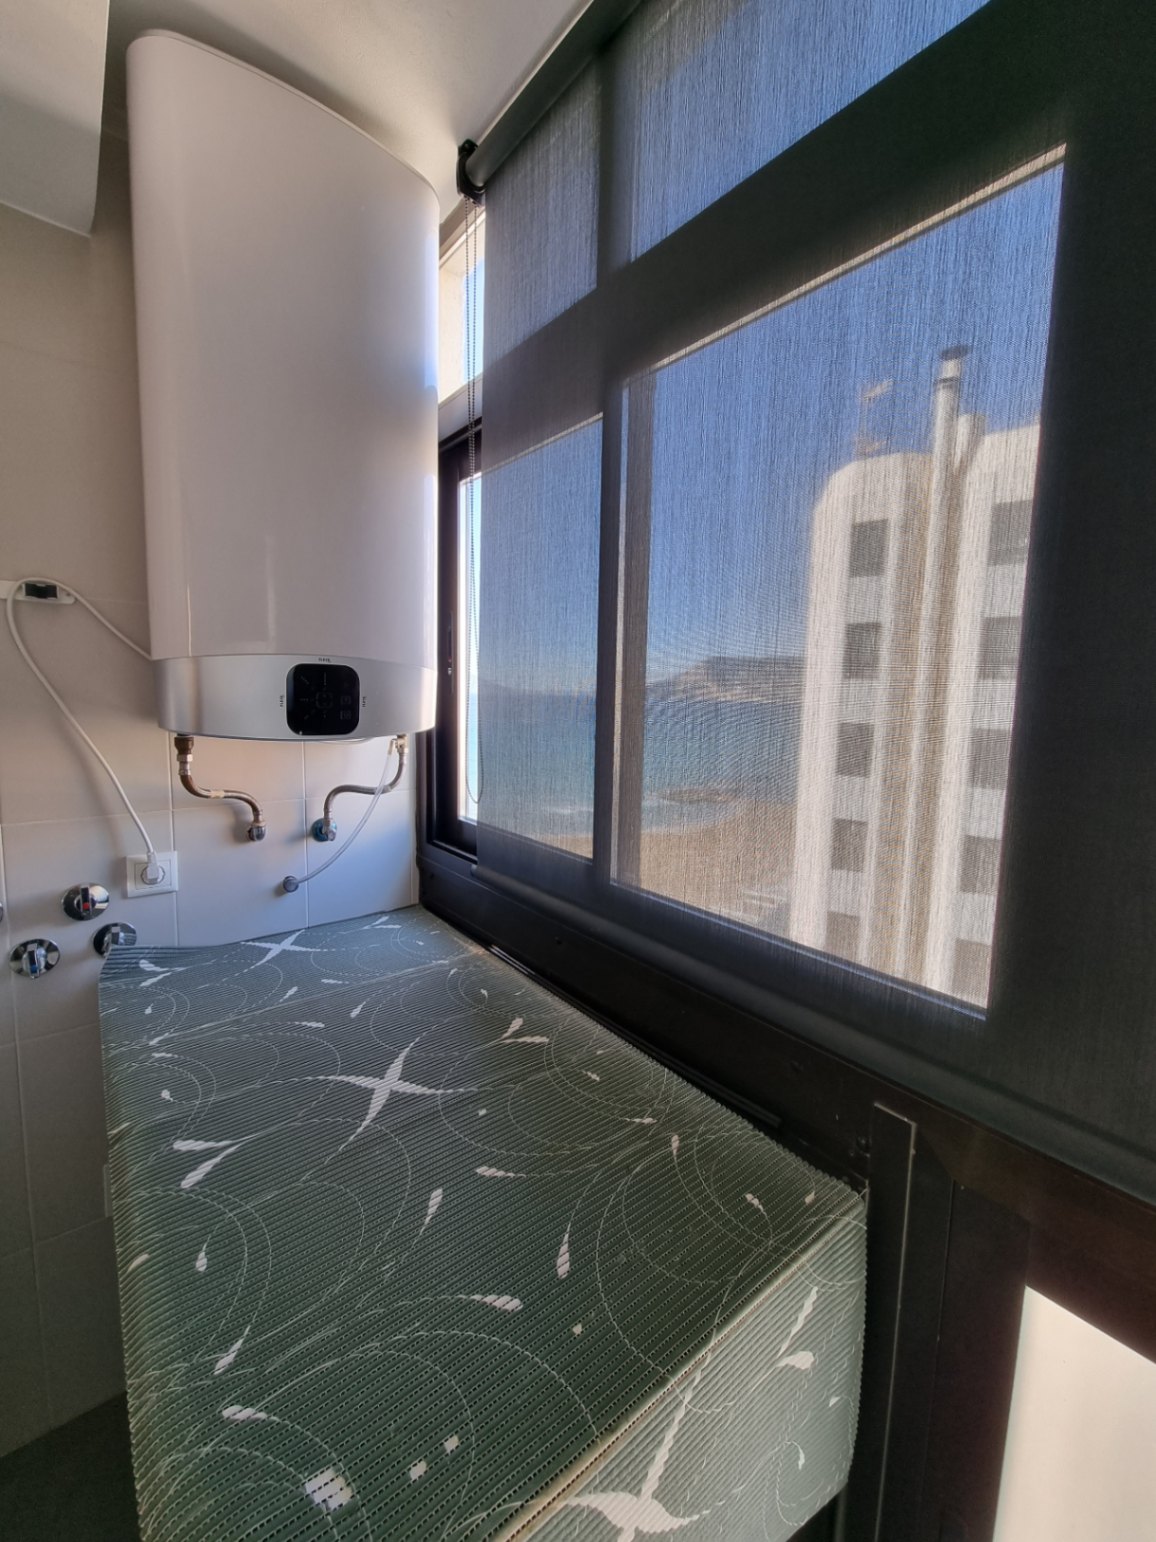 Espléndido apartamento en primera línea: vistas excepcionales al Puerto de Calpe